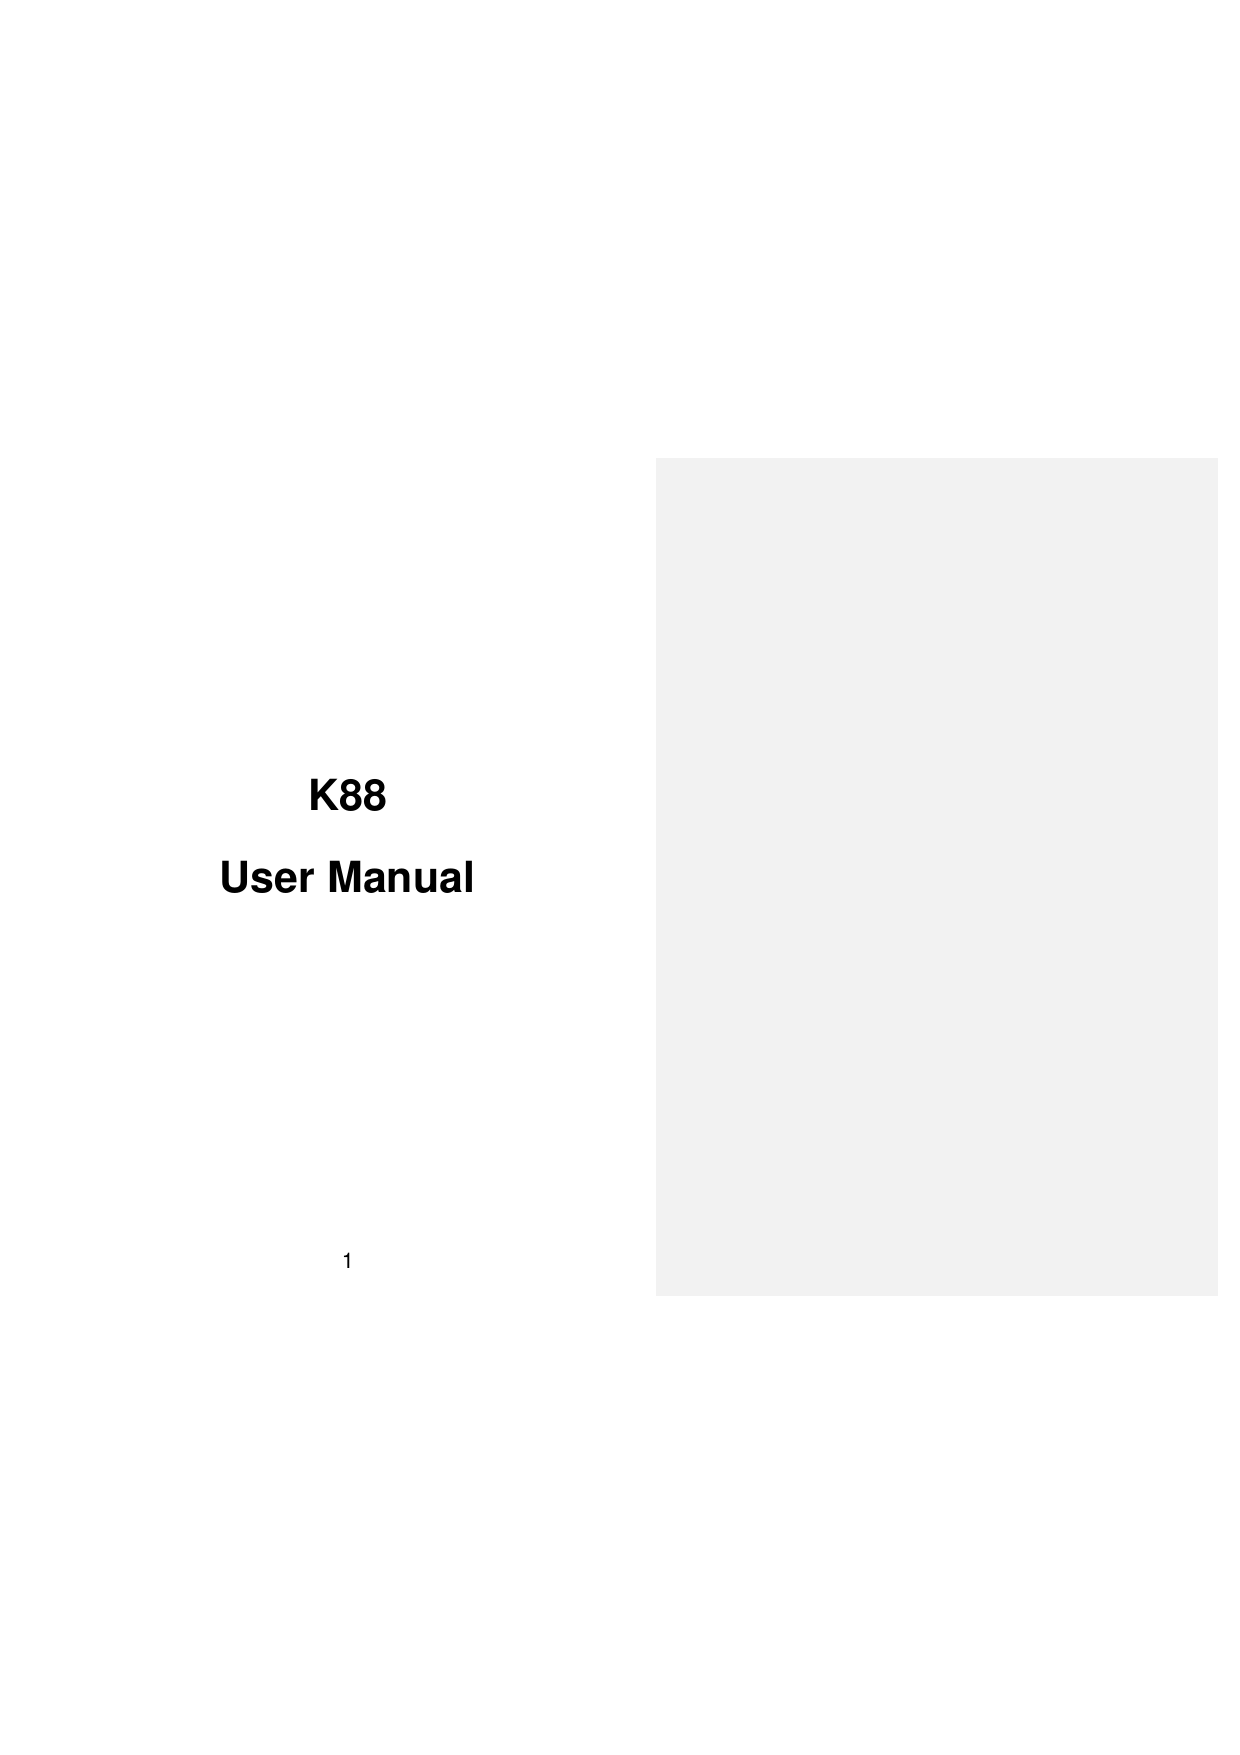  1             K88 User Manual   